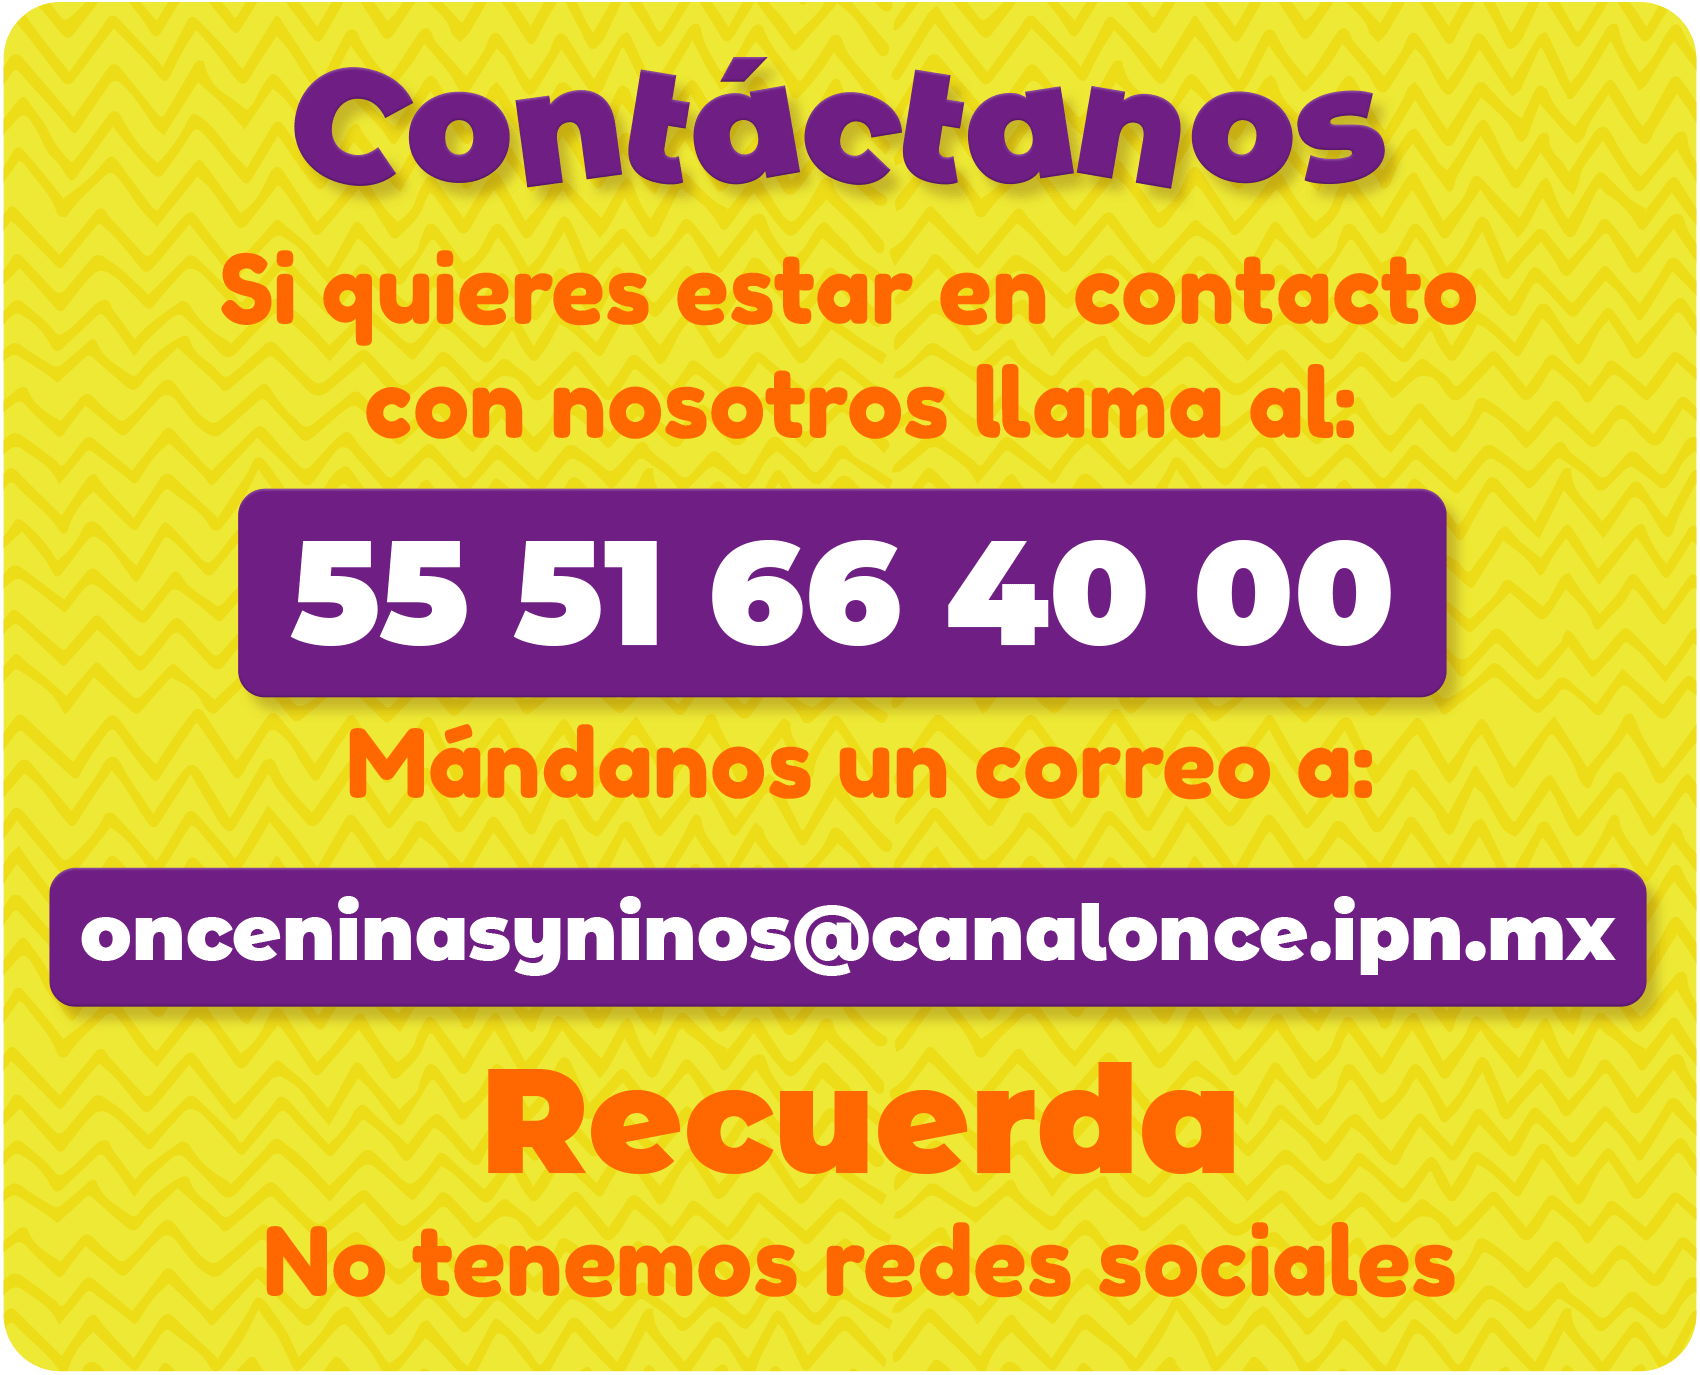 Contacto Once Niñas y Niños 
5551664000
onceninasyninos@canalonce.ipn.mx